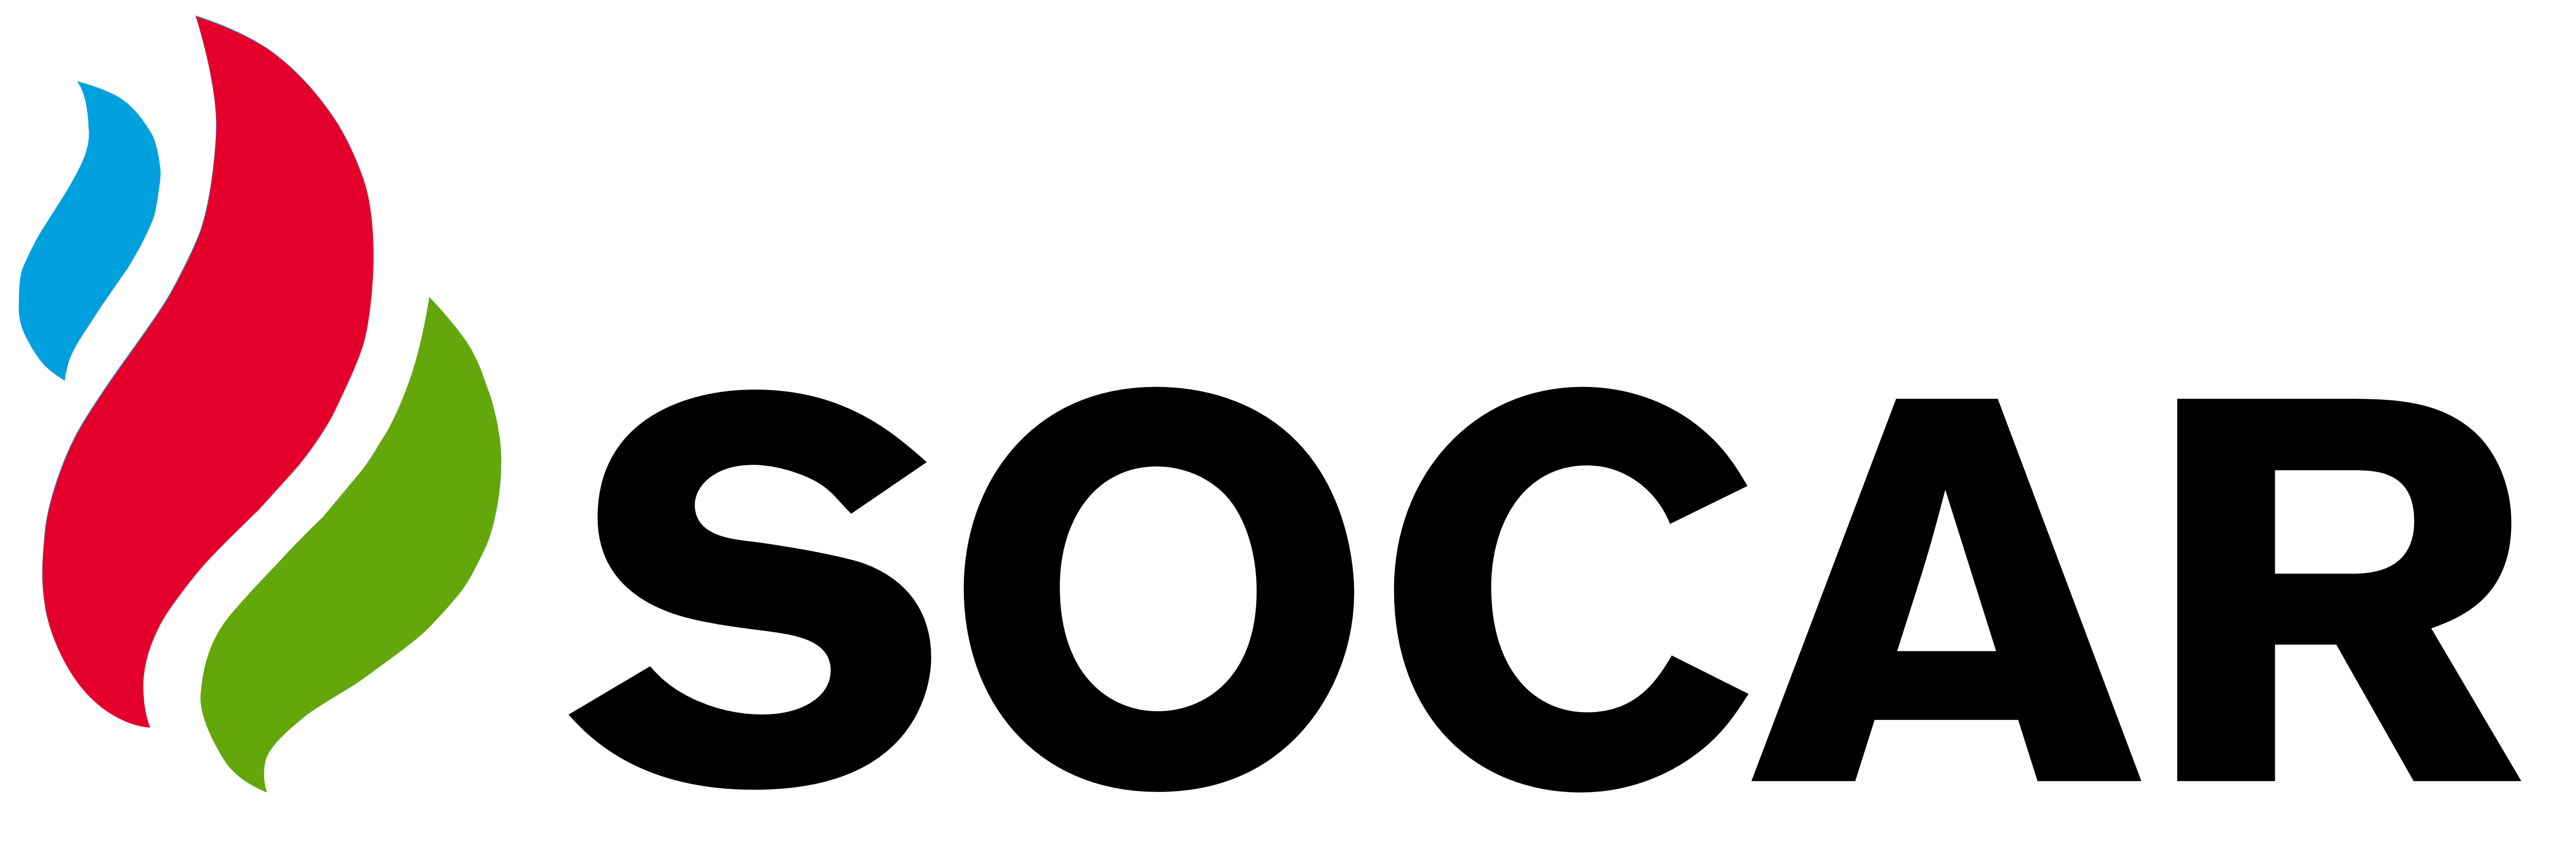 Socar Logo PNG - 32757